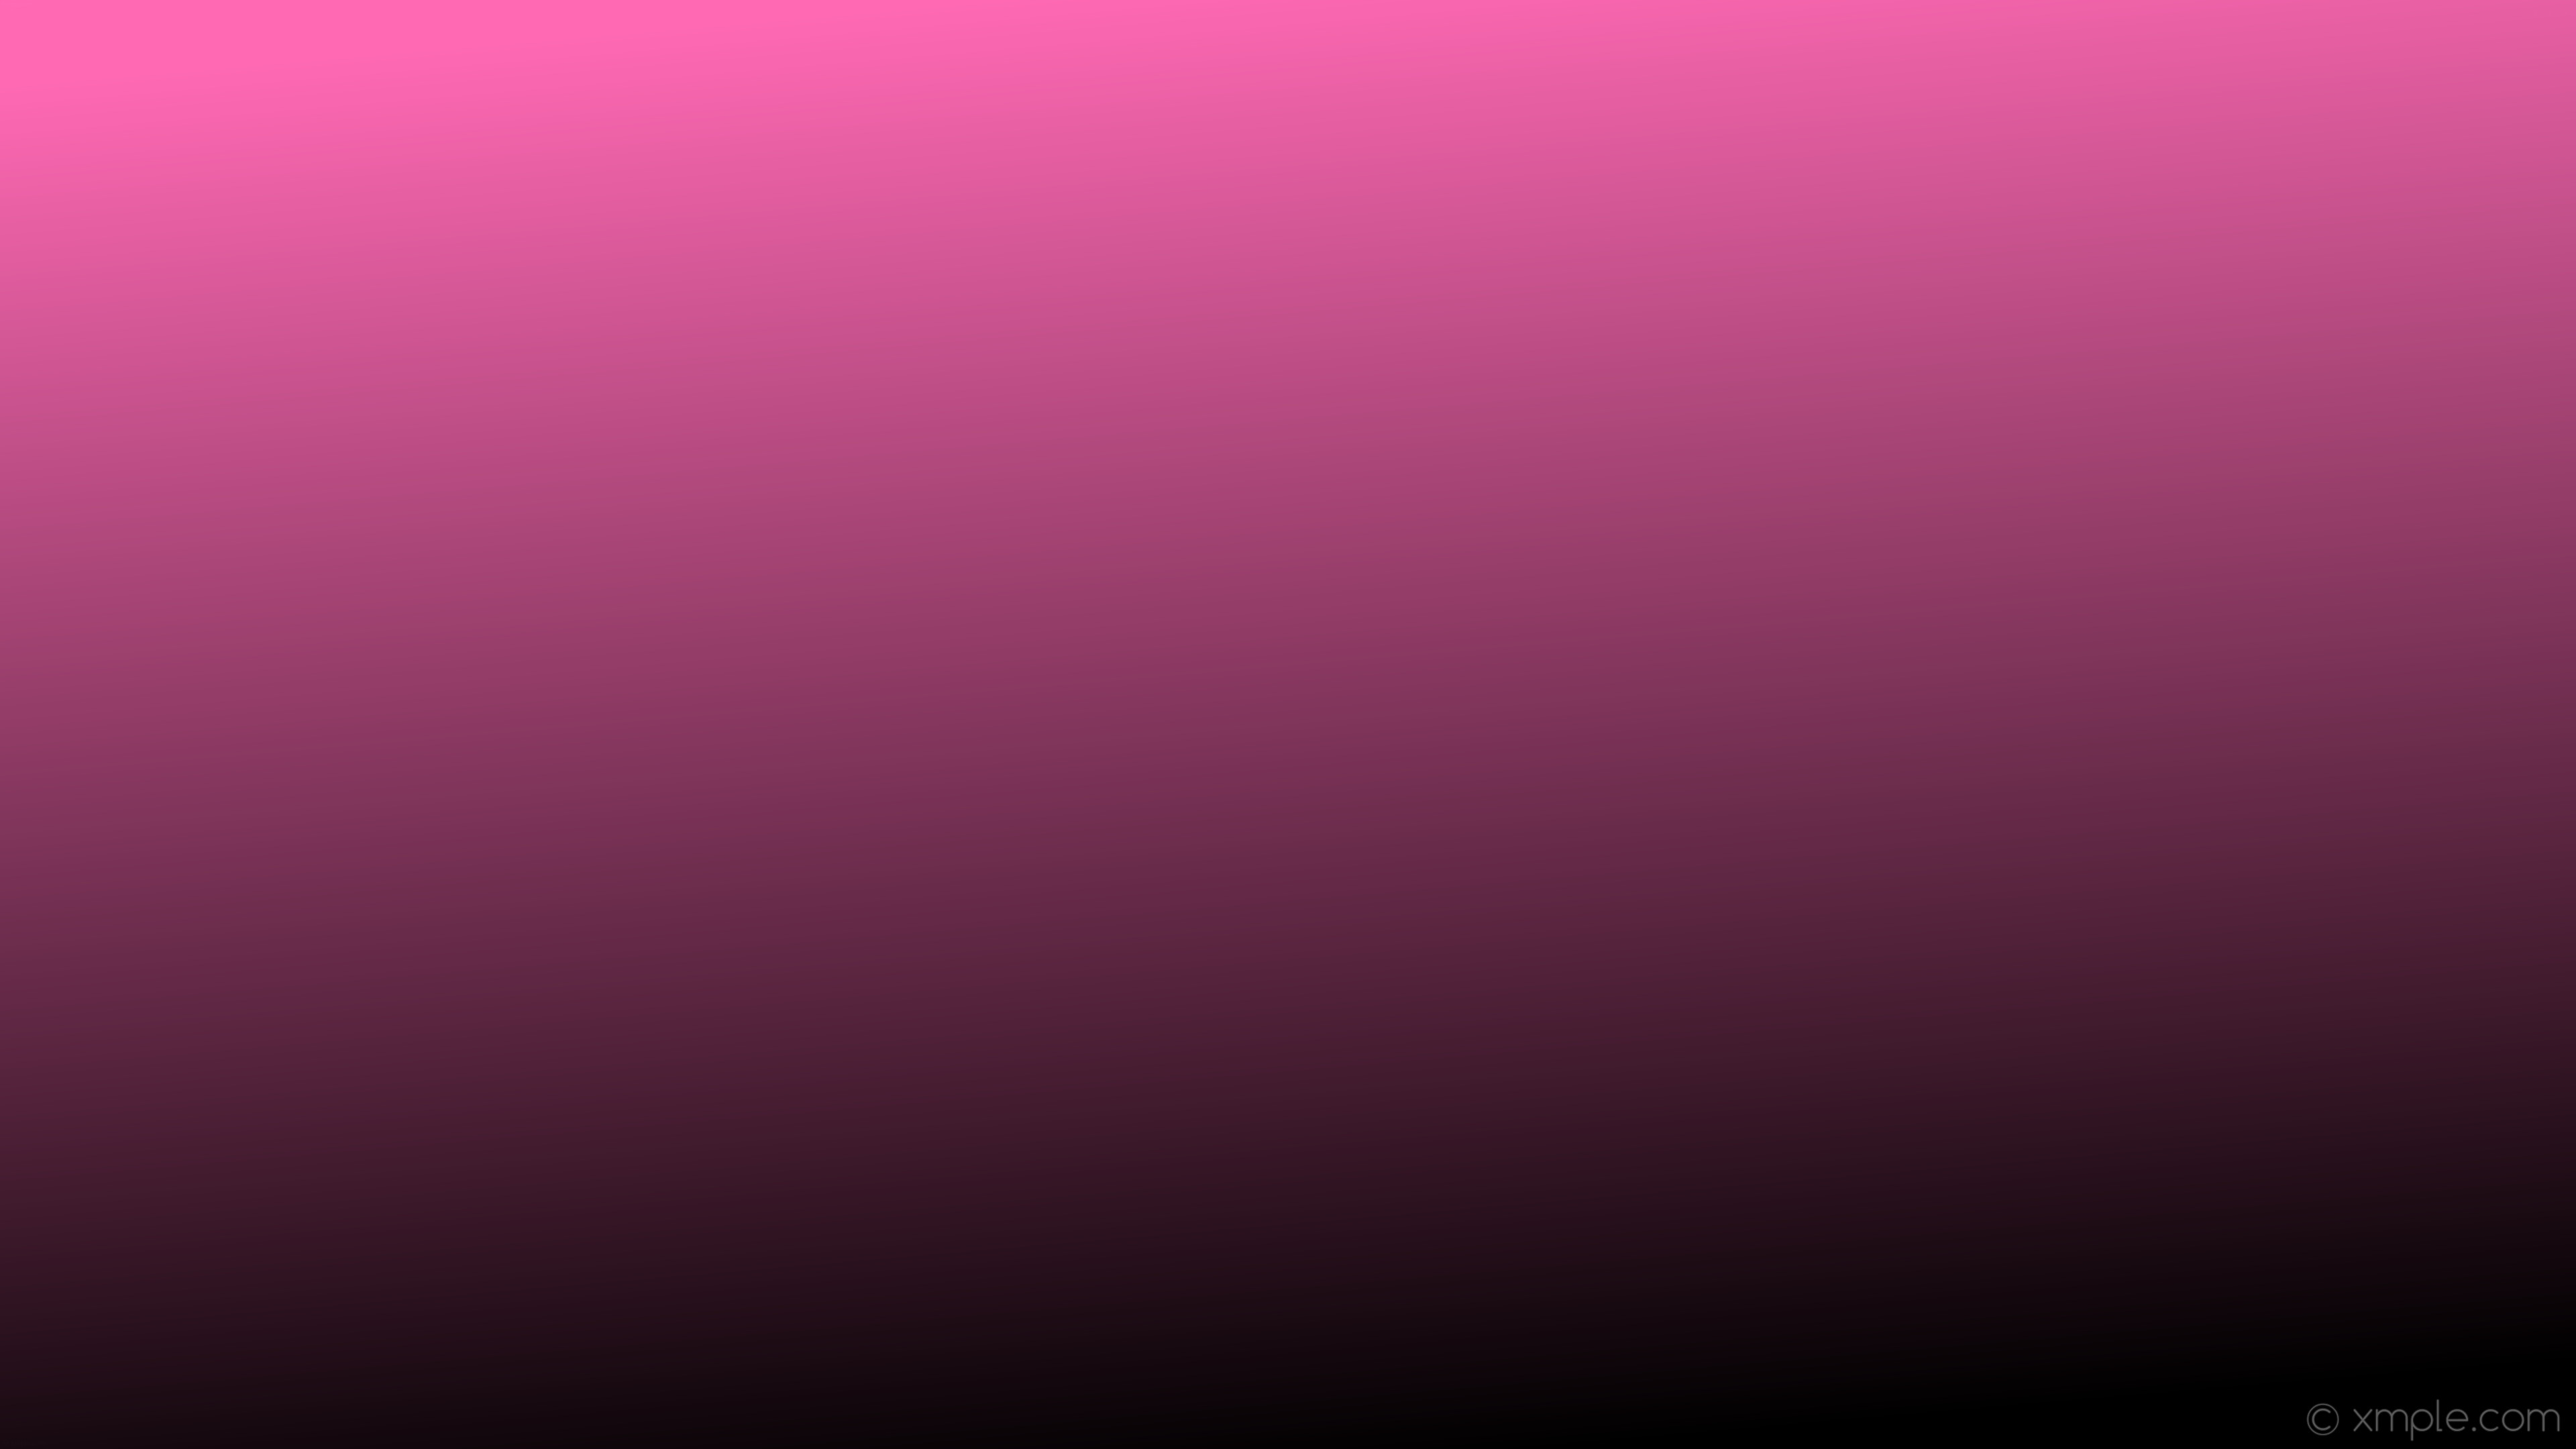 3840x2160 wallpaper black pink gradient linear hot pink #ff69b4 #000000 105Â°